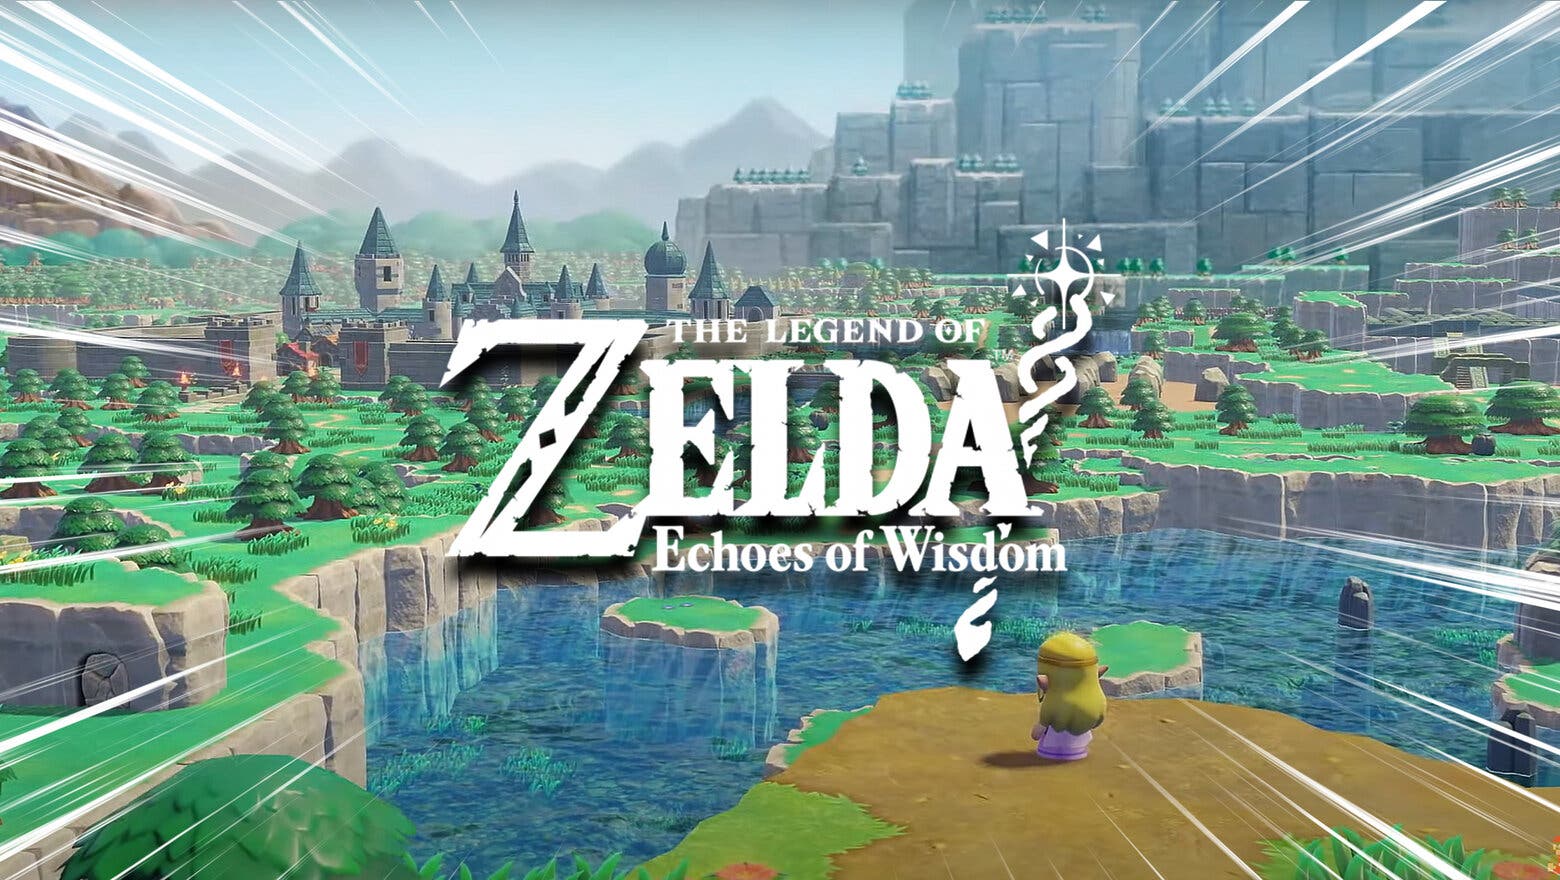 Hyrule Zelda Echoes of Wisdom